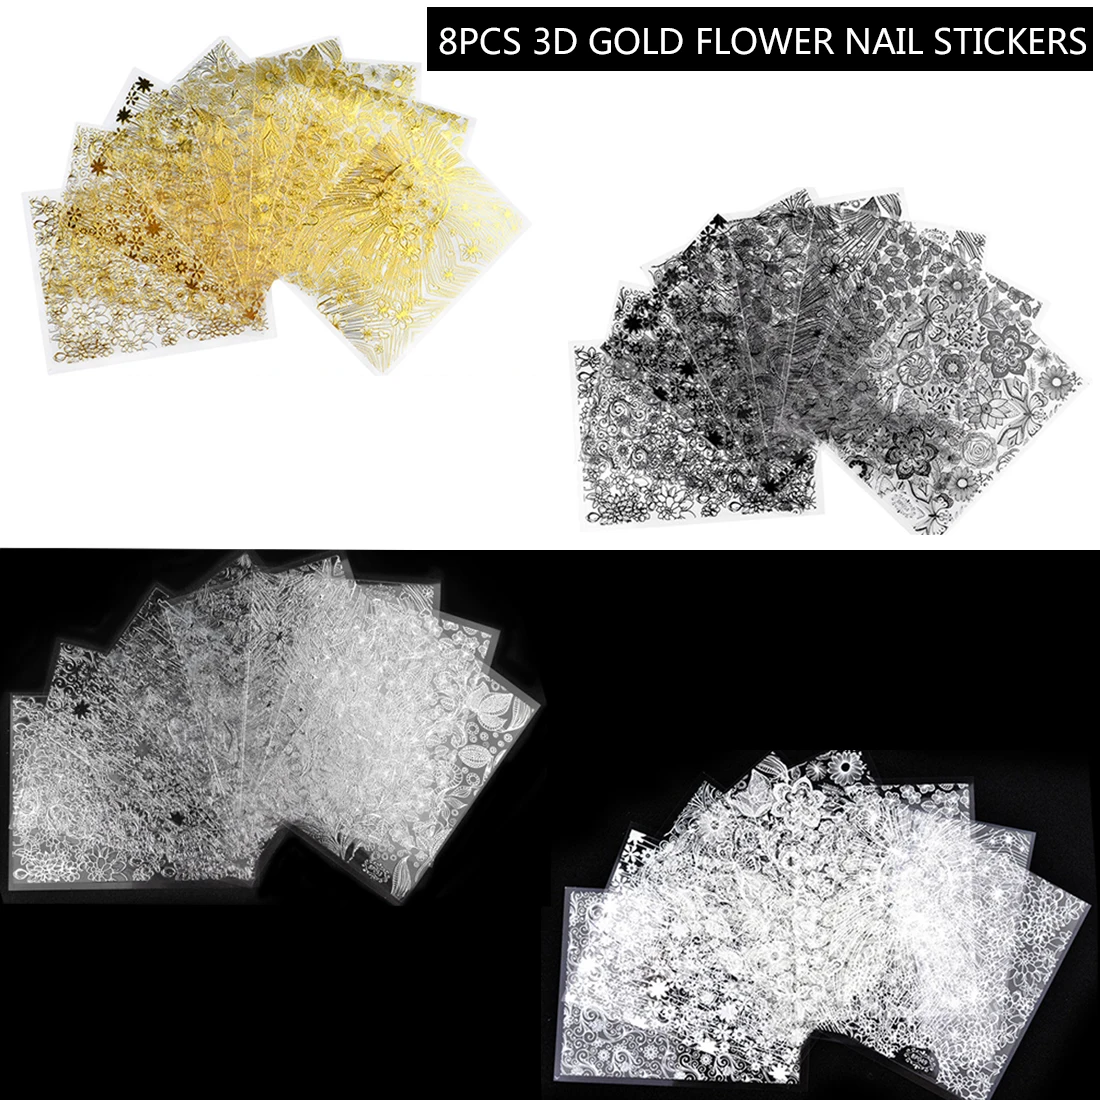 Наклейки для ногтей 4 цвета цветущие цветы Стикеры 3D на ногти Nail Art Наклейки 8 листов/набор тисненые 3D золотые цветы красота советы